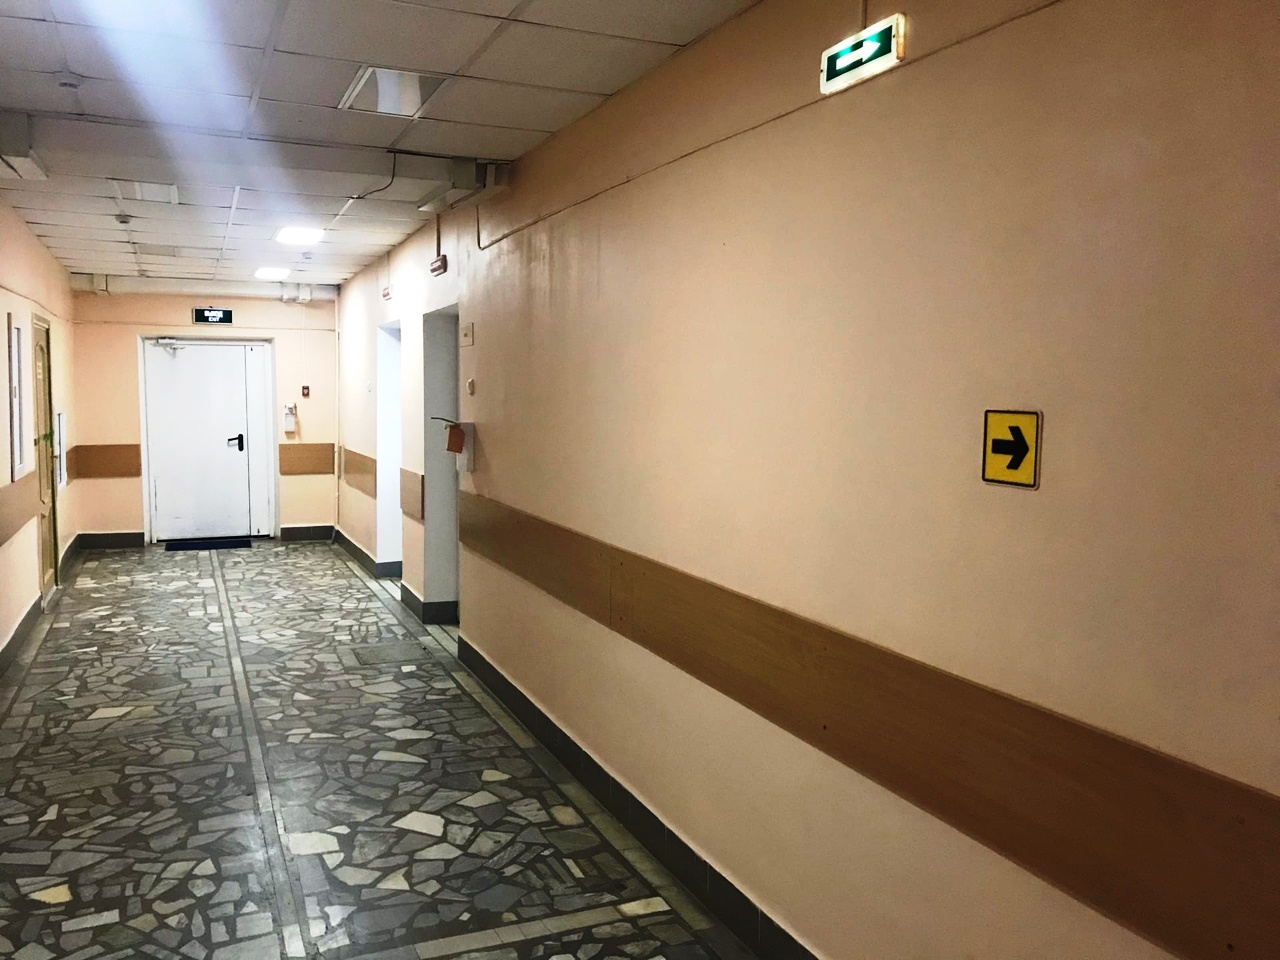 В Башкирии сотрудницу районной больницы уволили, пока она находилась в отпуске